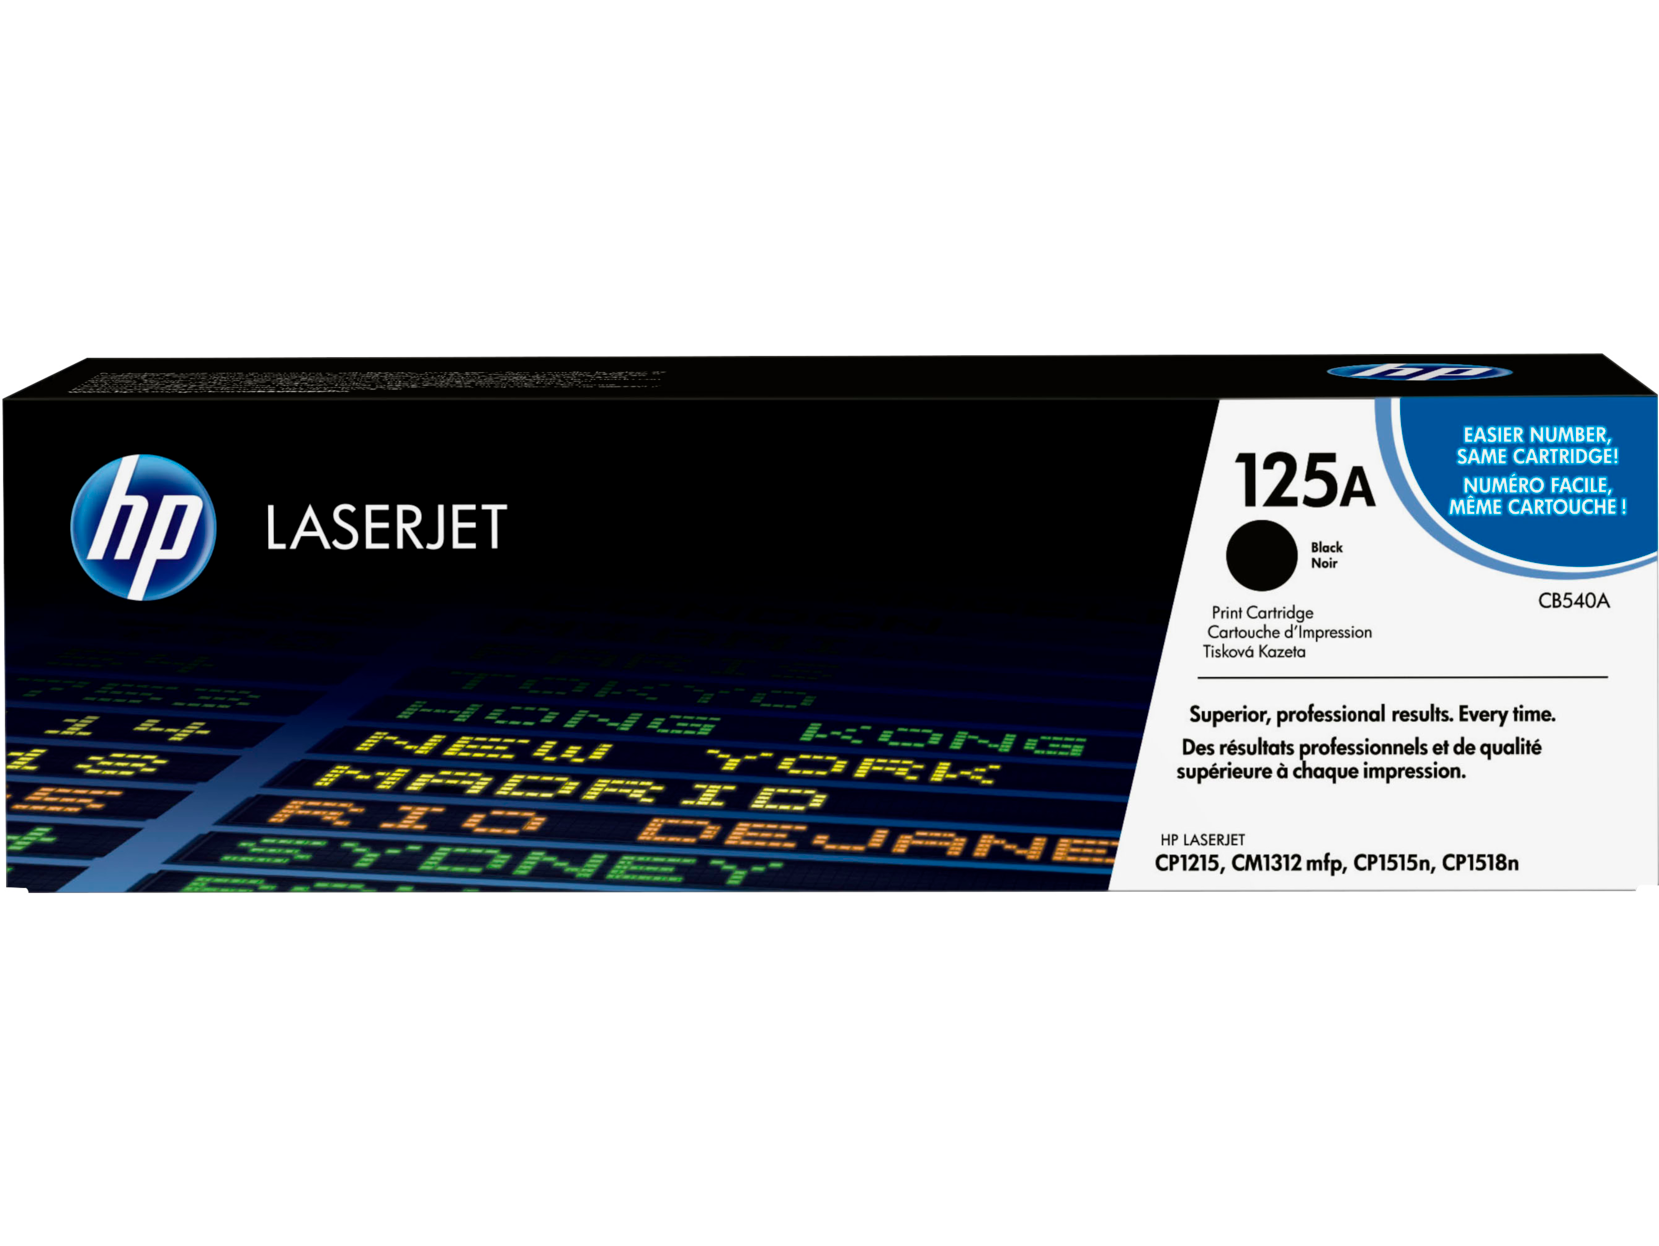 Картридж для печати HP Картридж HP 125A CB540A вид печати лазерный, цвет Черный, емкость